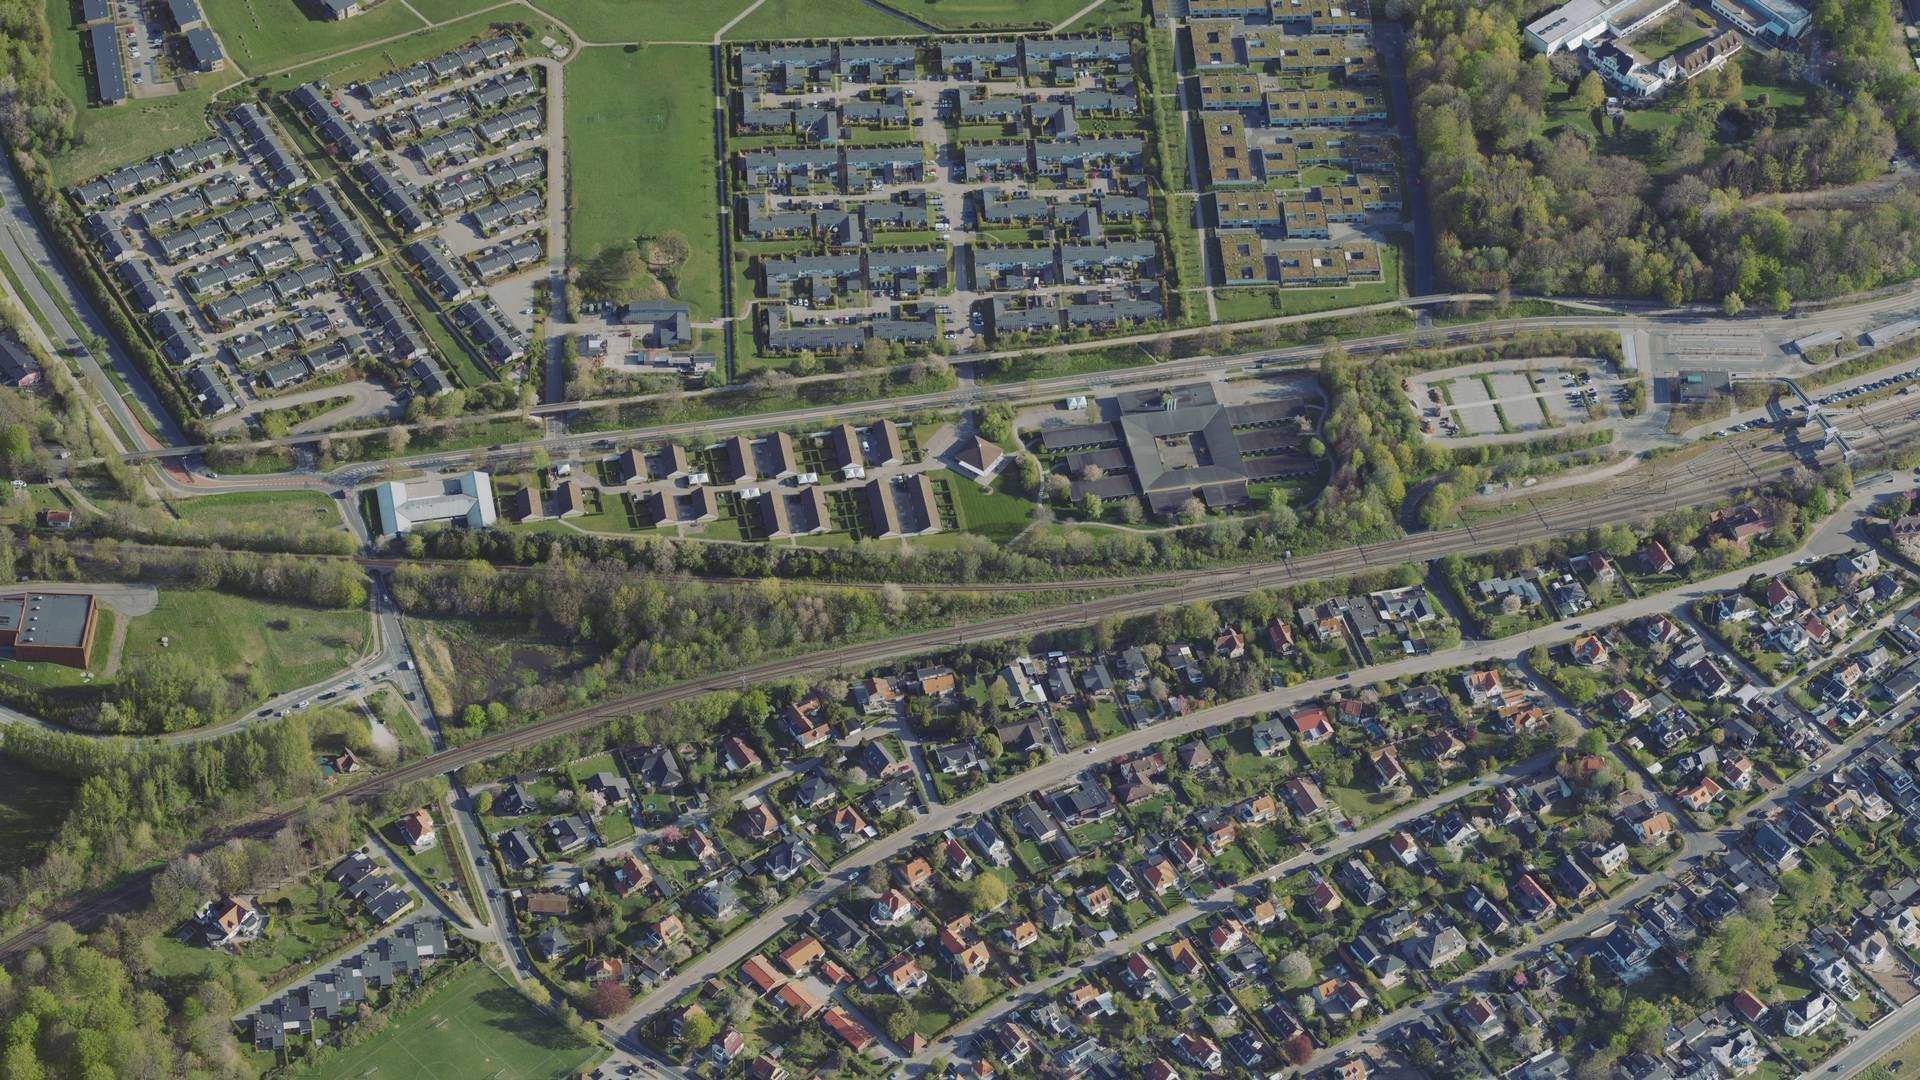 Boligområdet Stævnen i nordsjællandske Snekkersten ses midt i billedet øverst. | Foto: Styrelsen for Dataforsyning og Infrastruktur